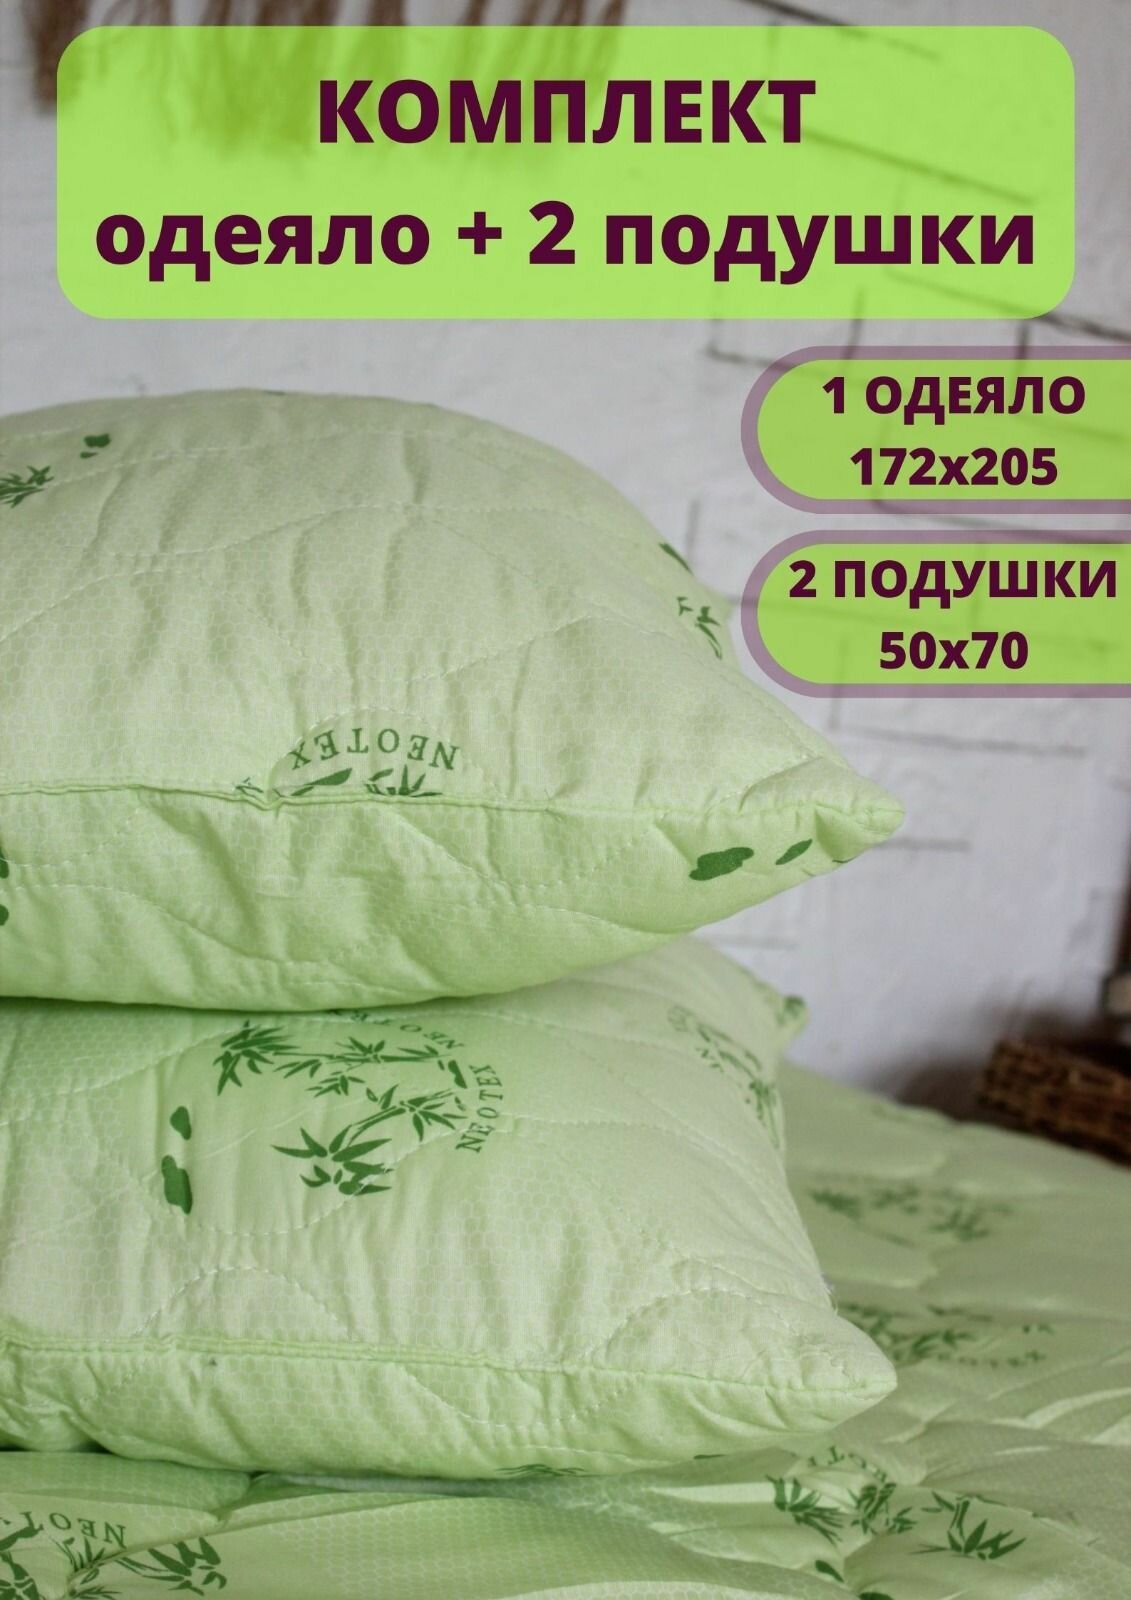 Комплект 2 подушки 50х70 и двуспальное одеяло 172х205